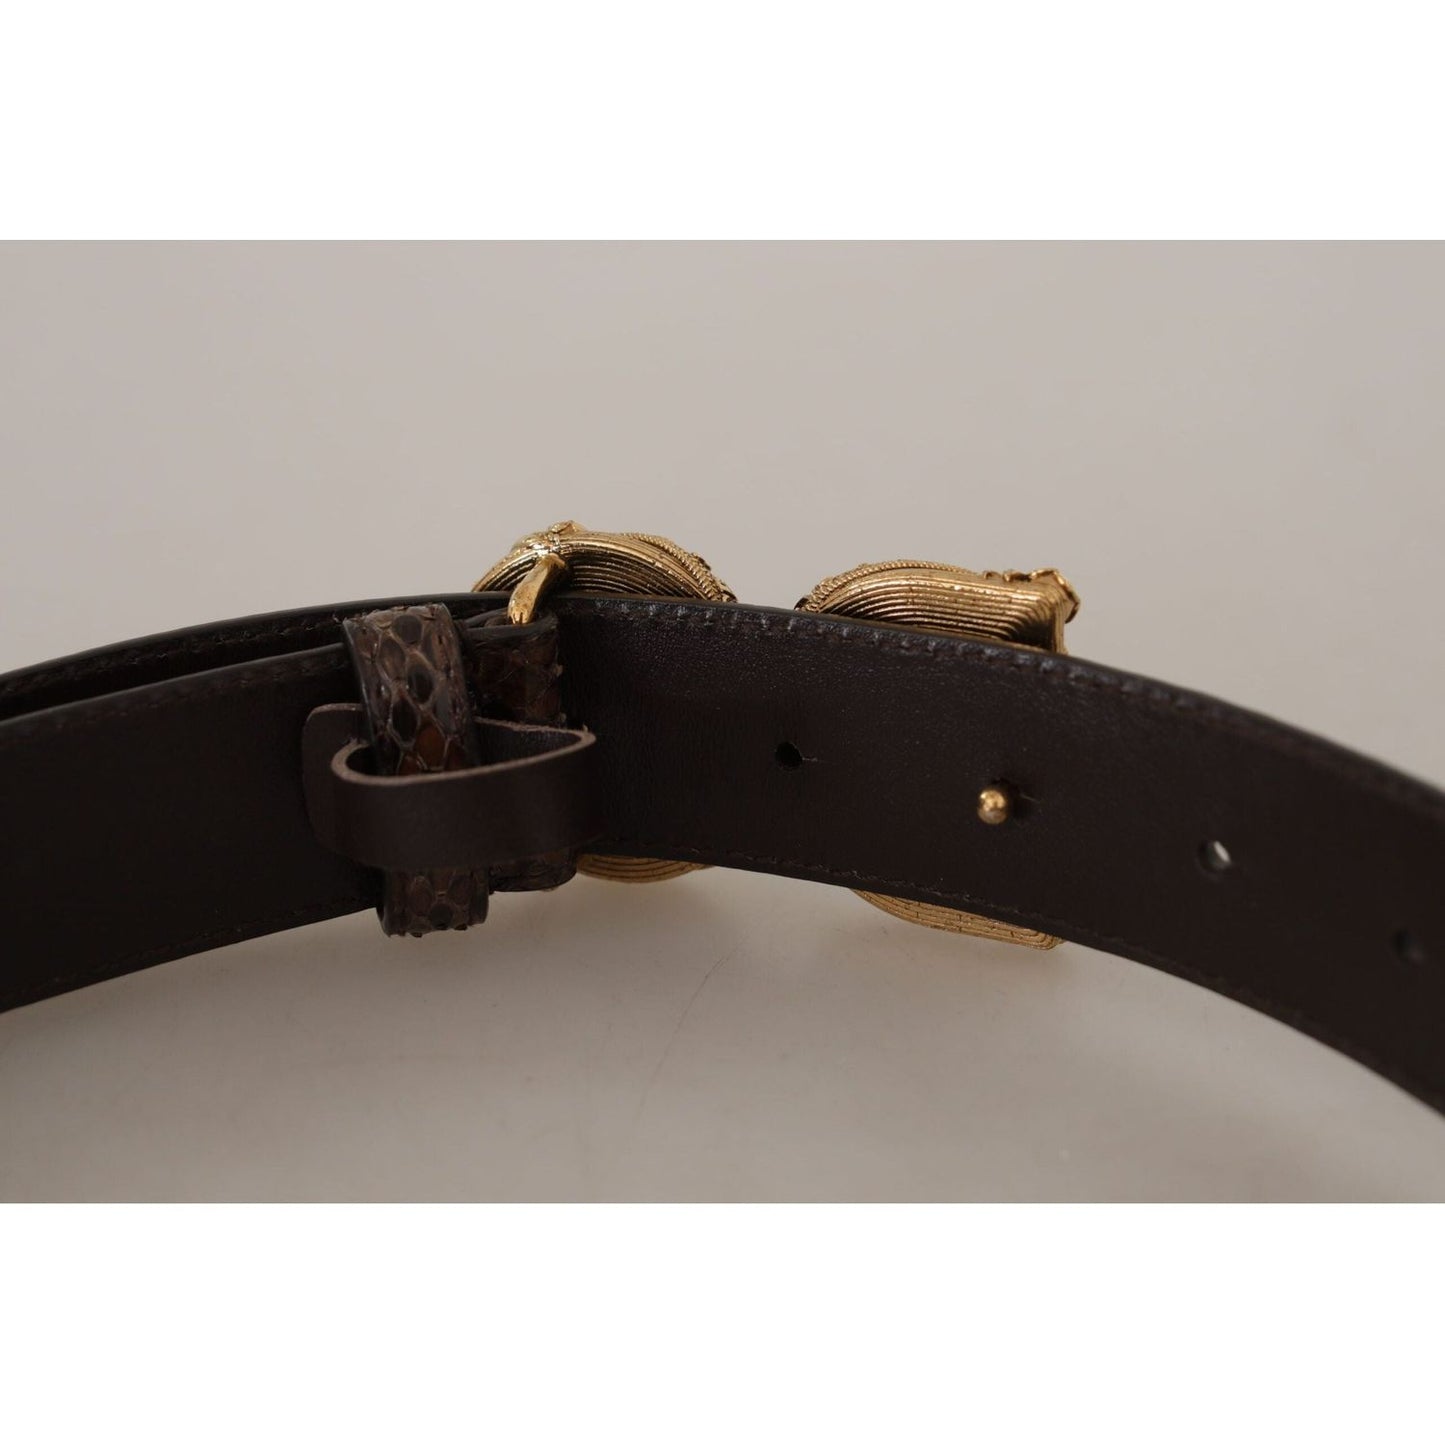 Dolce & Gabbana Elegant Snakeskin Leather Belt brown-amore-animal-print-exotic-leather-logo-buckle-belt